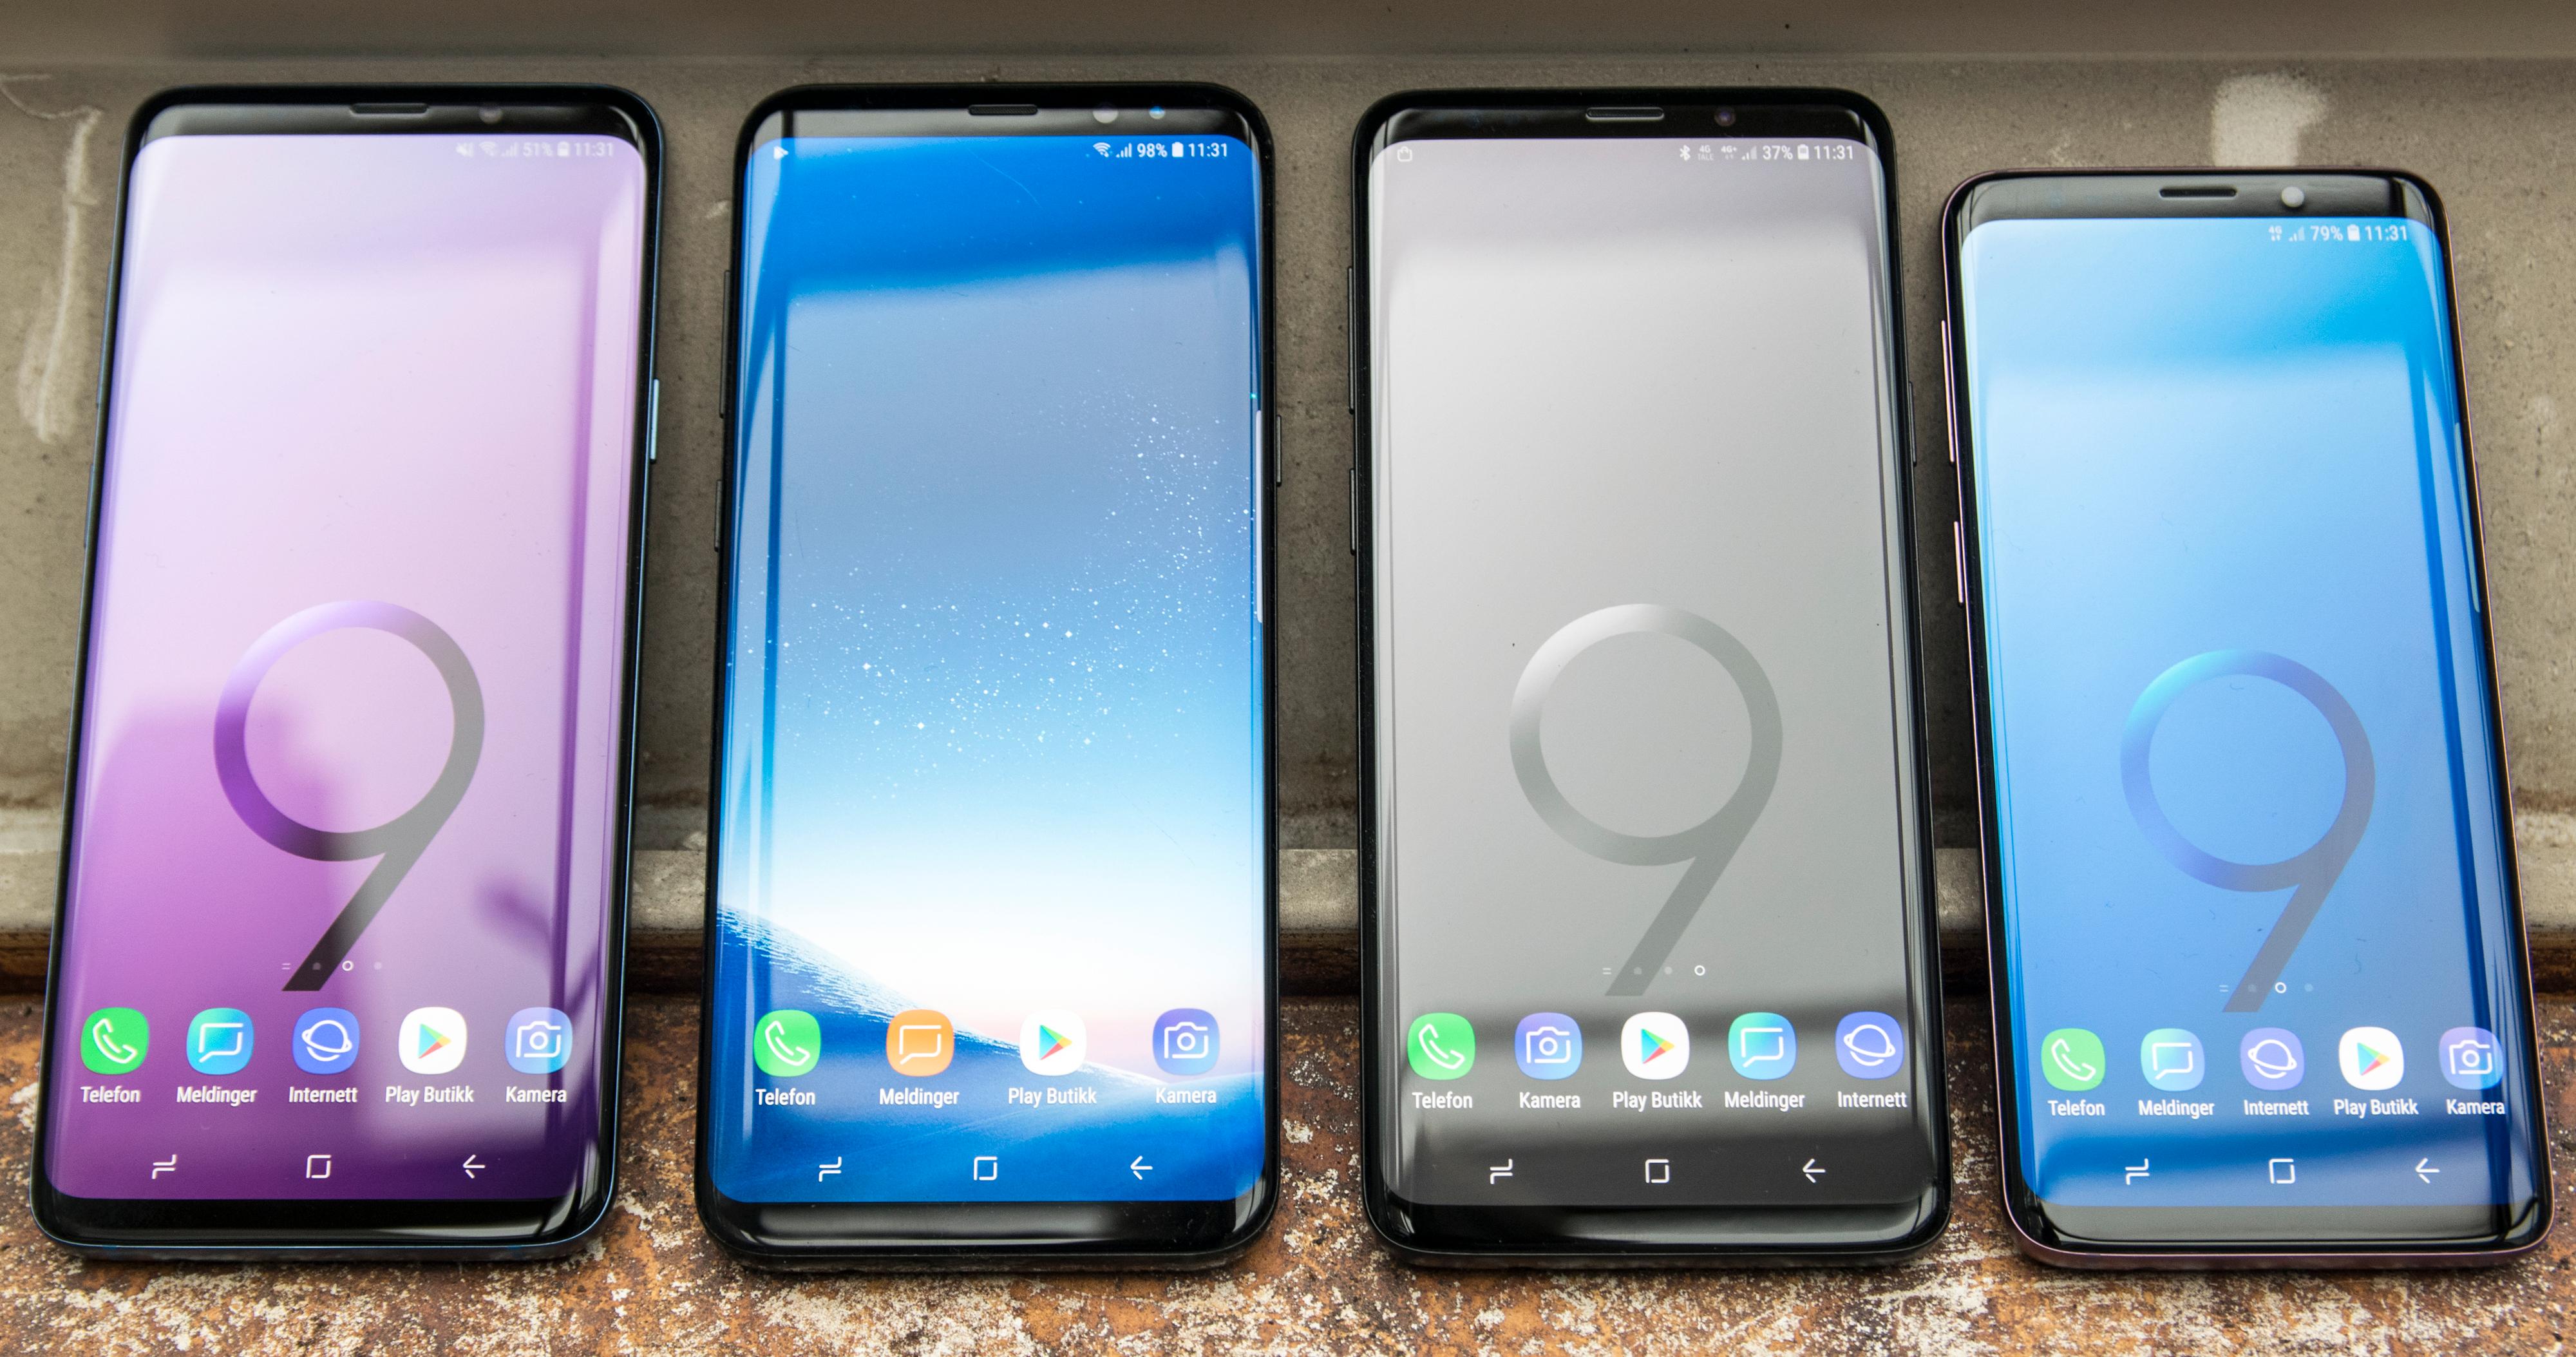 Én av disse telefonene later som. Nummer to fra venstre er en Galaxy S8+. Den hadde vært vanskeligere å skille fra 9-erne om vi ikke ga dem litt ekstra drahjelp med bakgrunnsbildene.